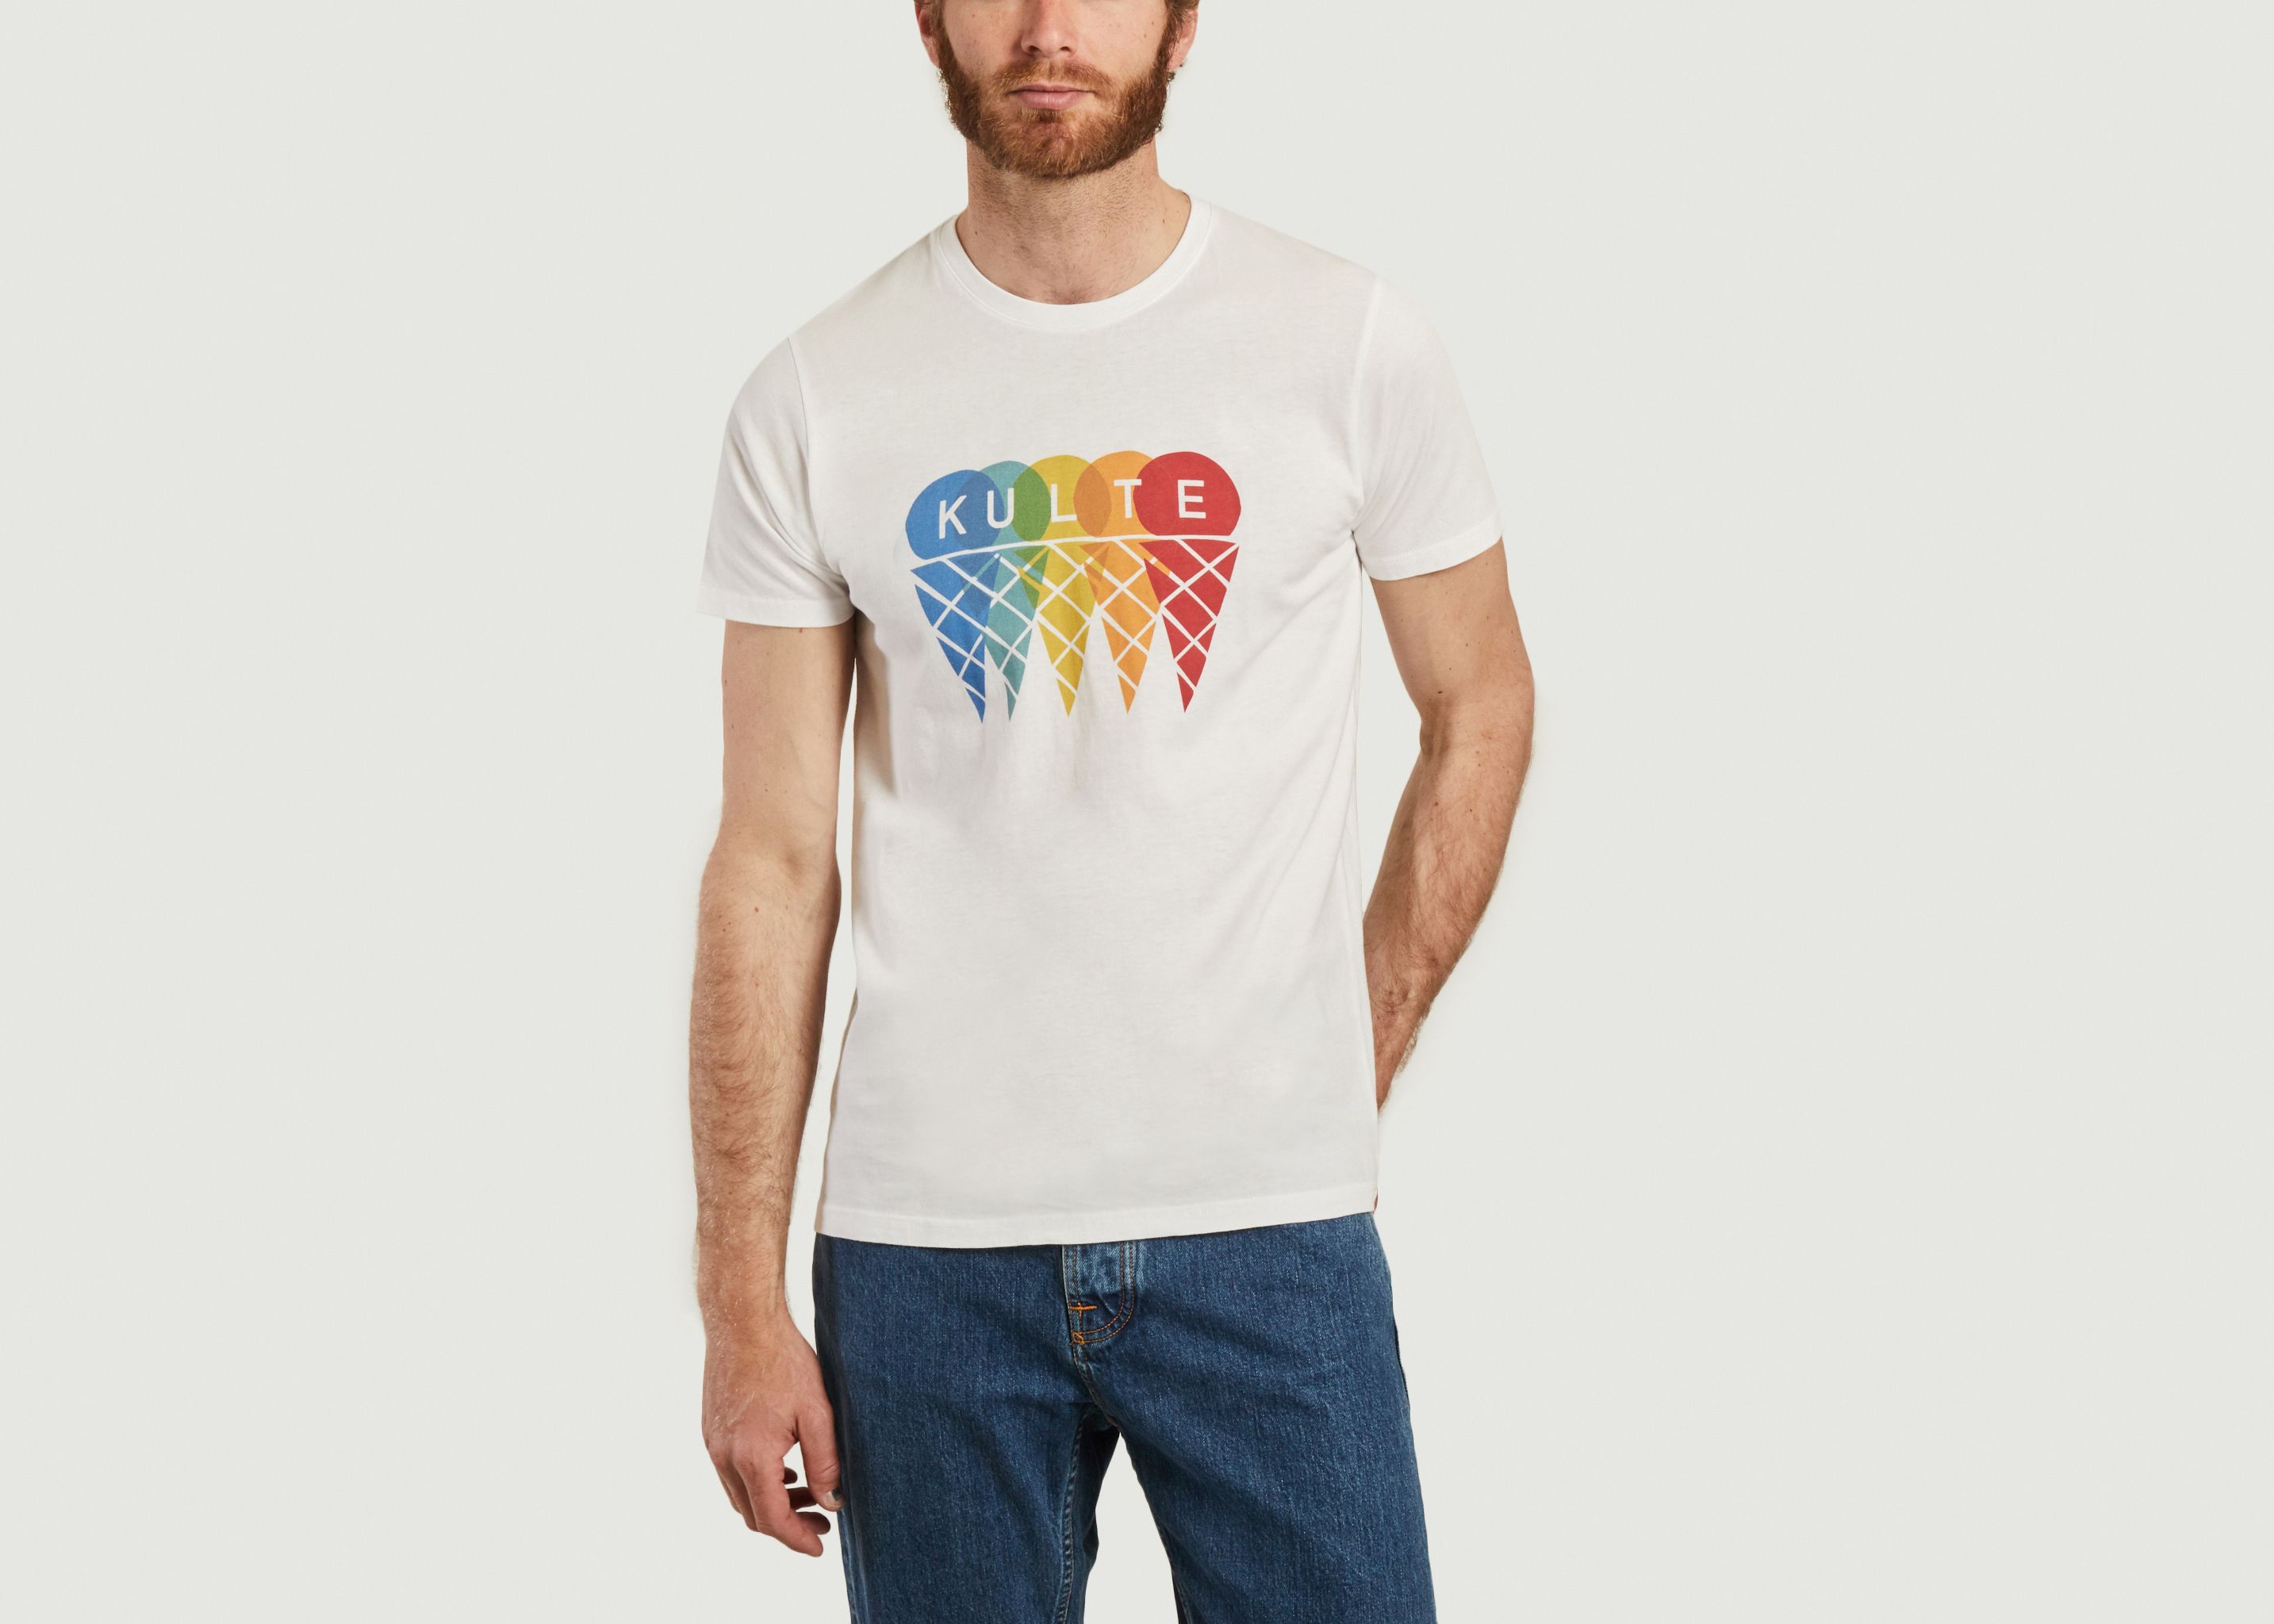 Cornet T-shirt - Kulte